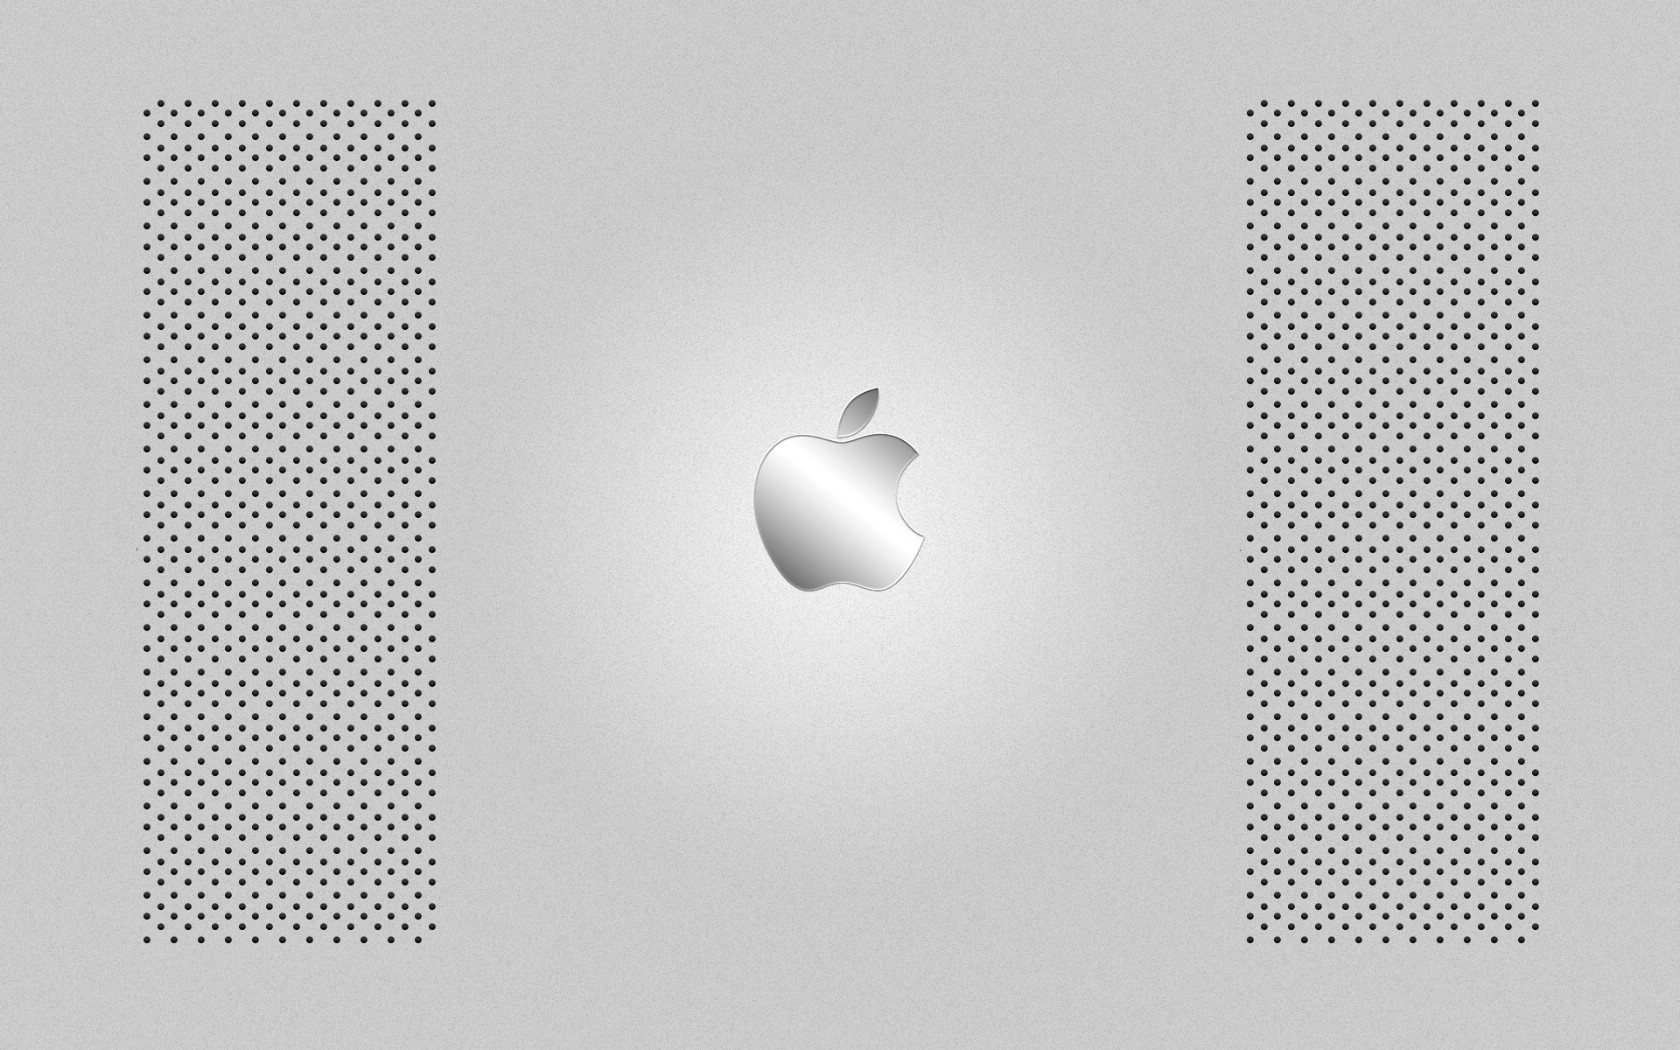 壁纸1680x1050Apple主题 35 14壁纸 Apple主题壁纸 Apple主题图片 Apple主题素材 系统壁纸 系统图库 系统图片素材桌面壁纸